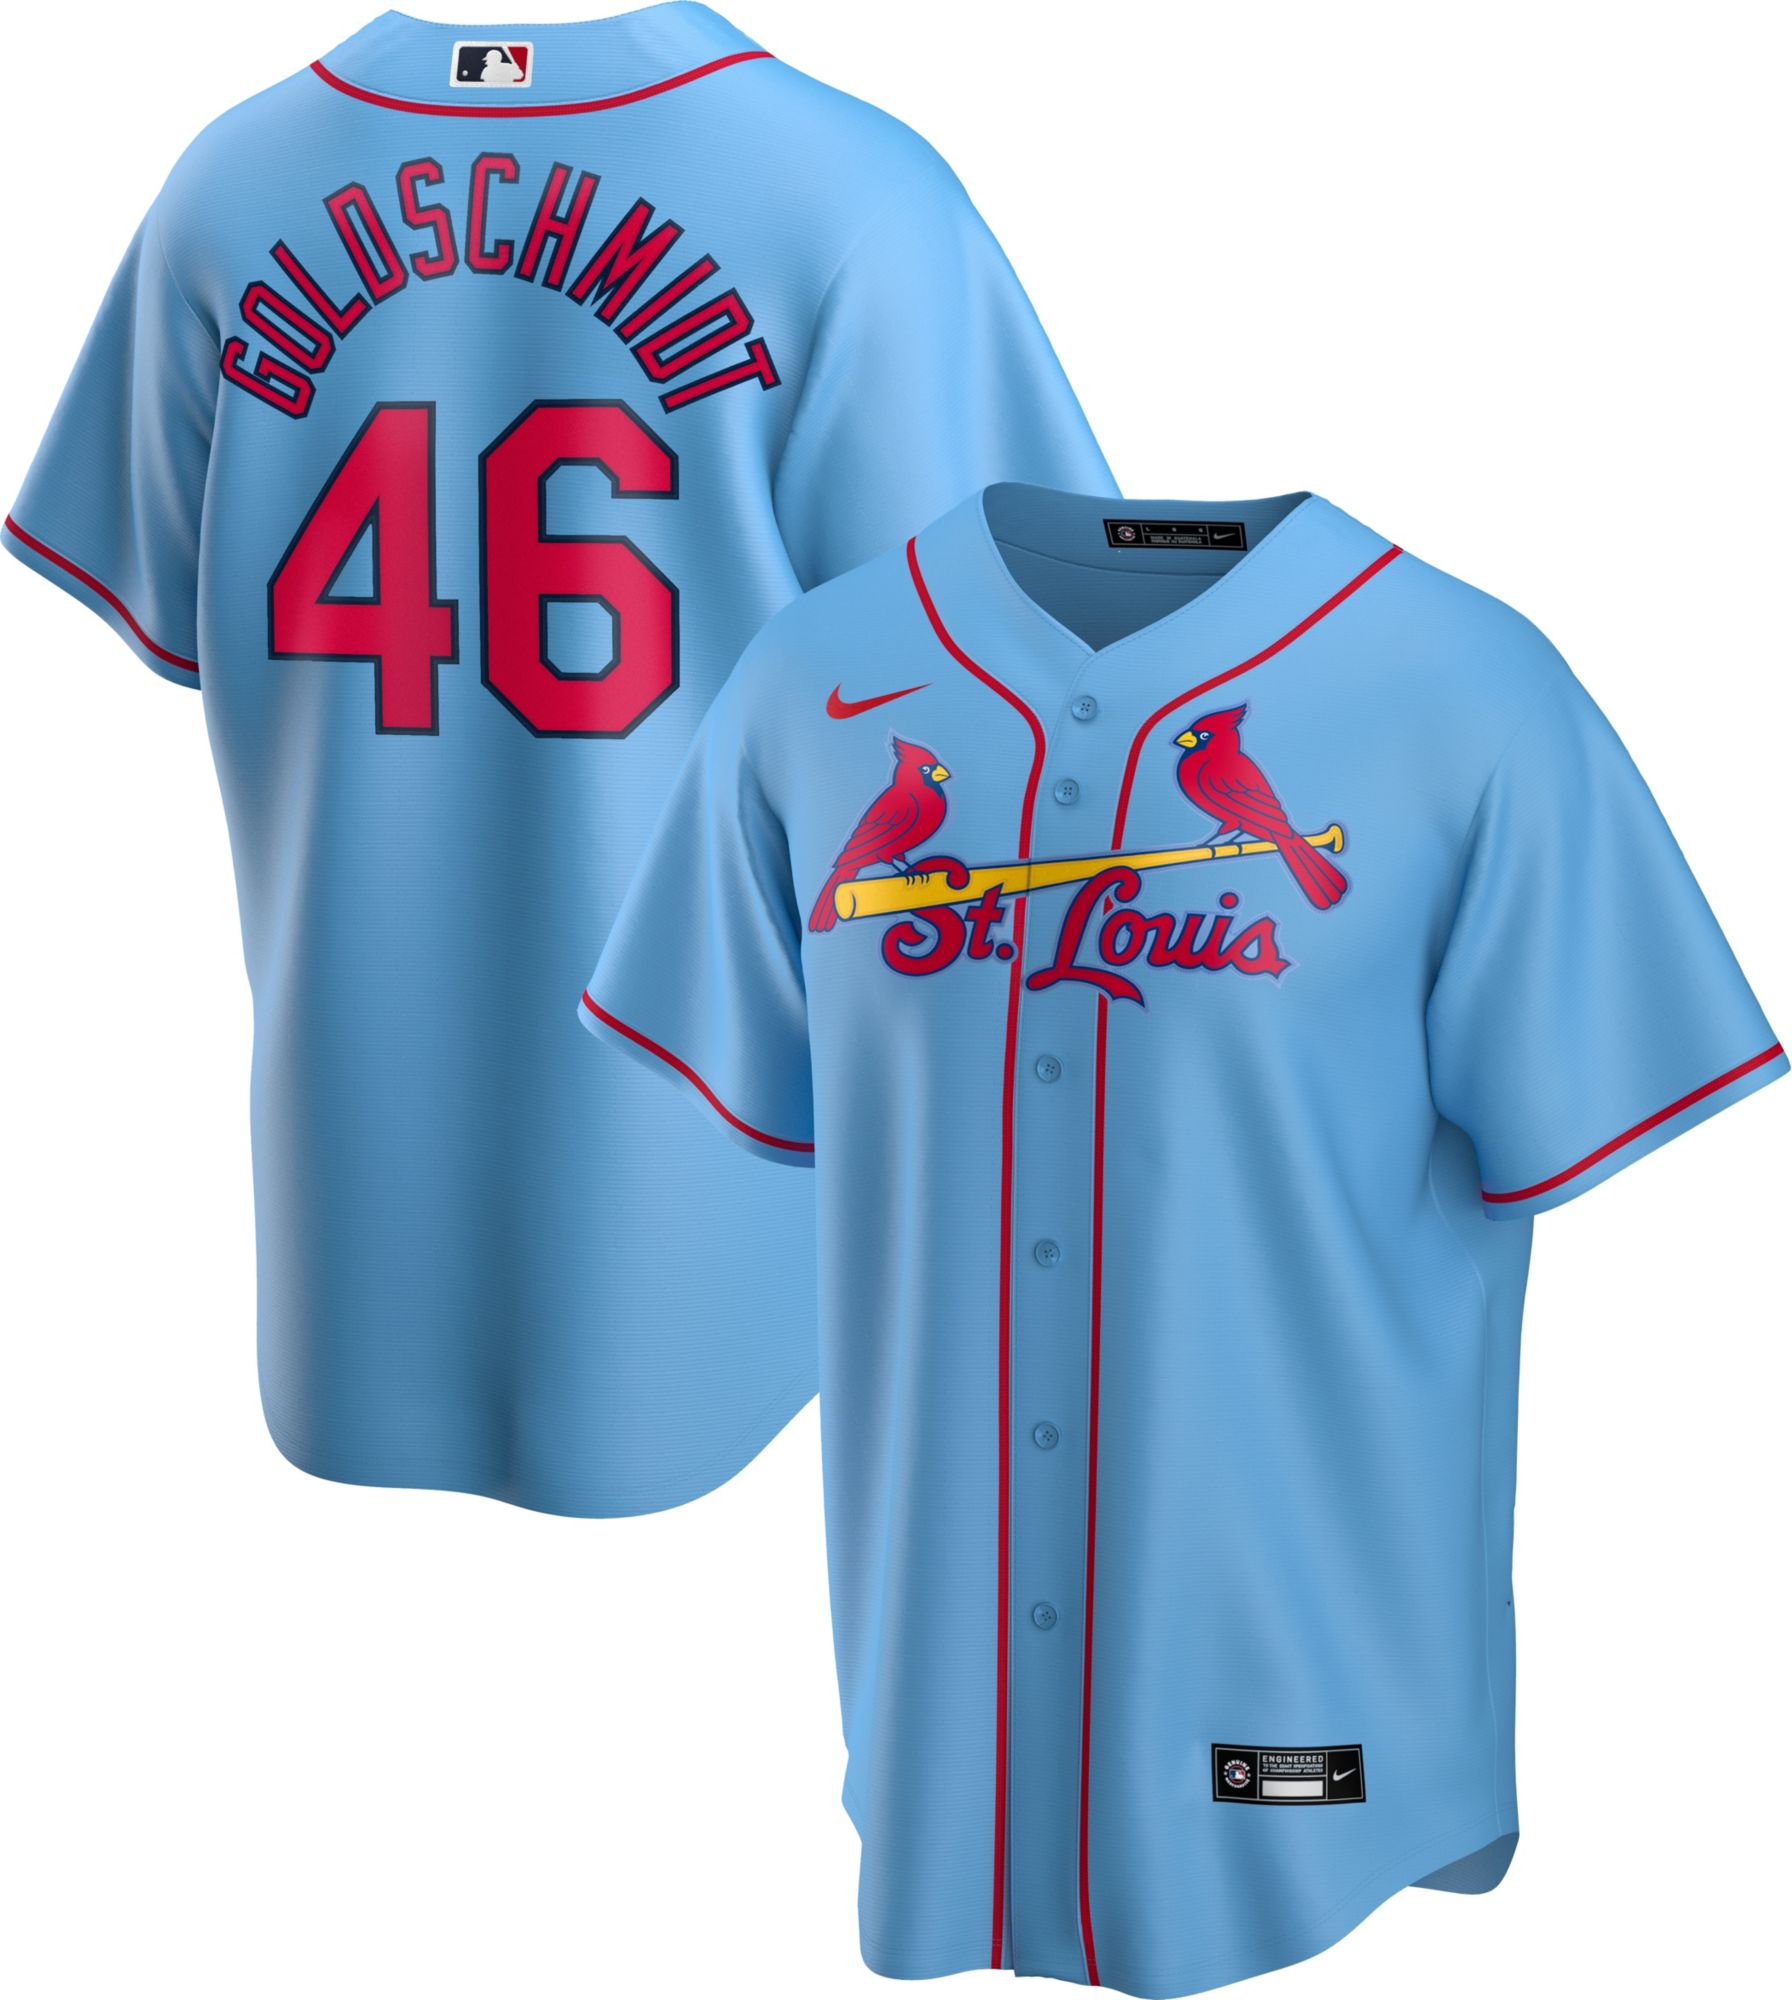 St. Louis Cardinals Polo Shirt – SportsDexter